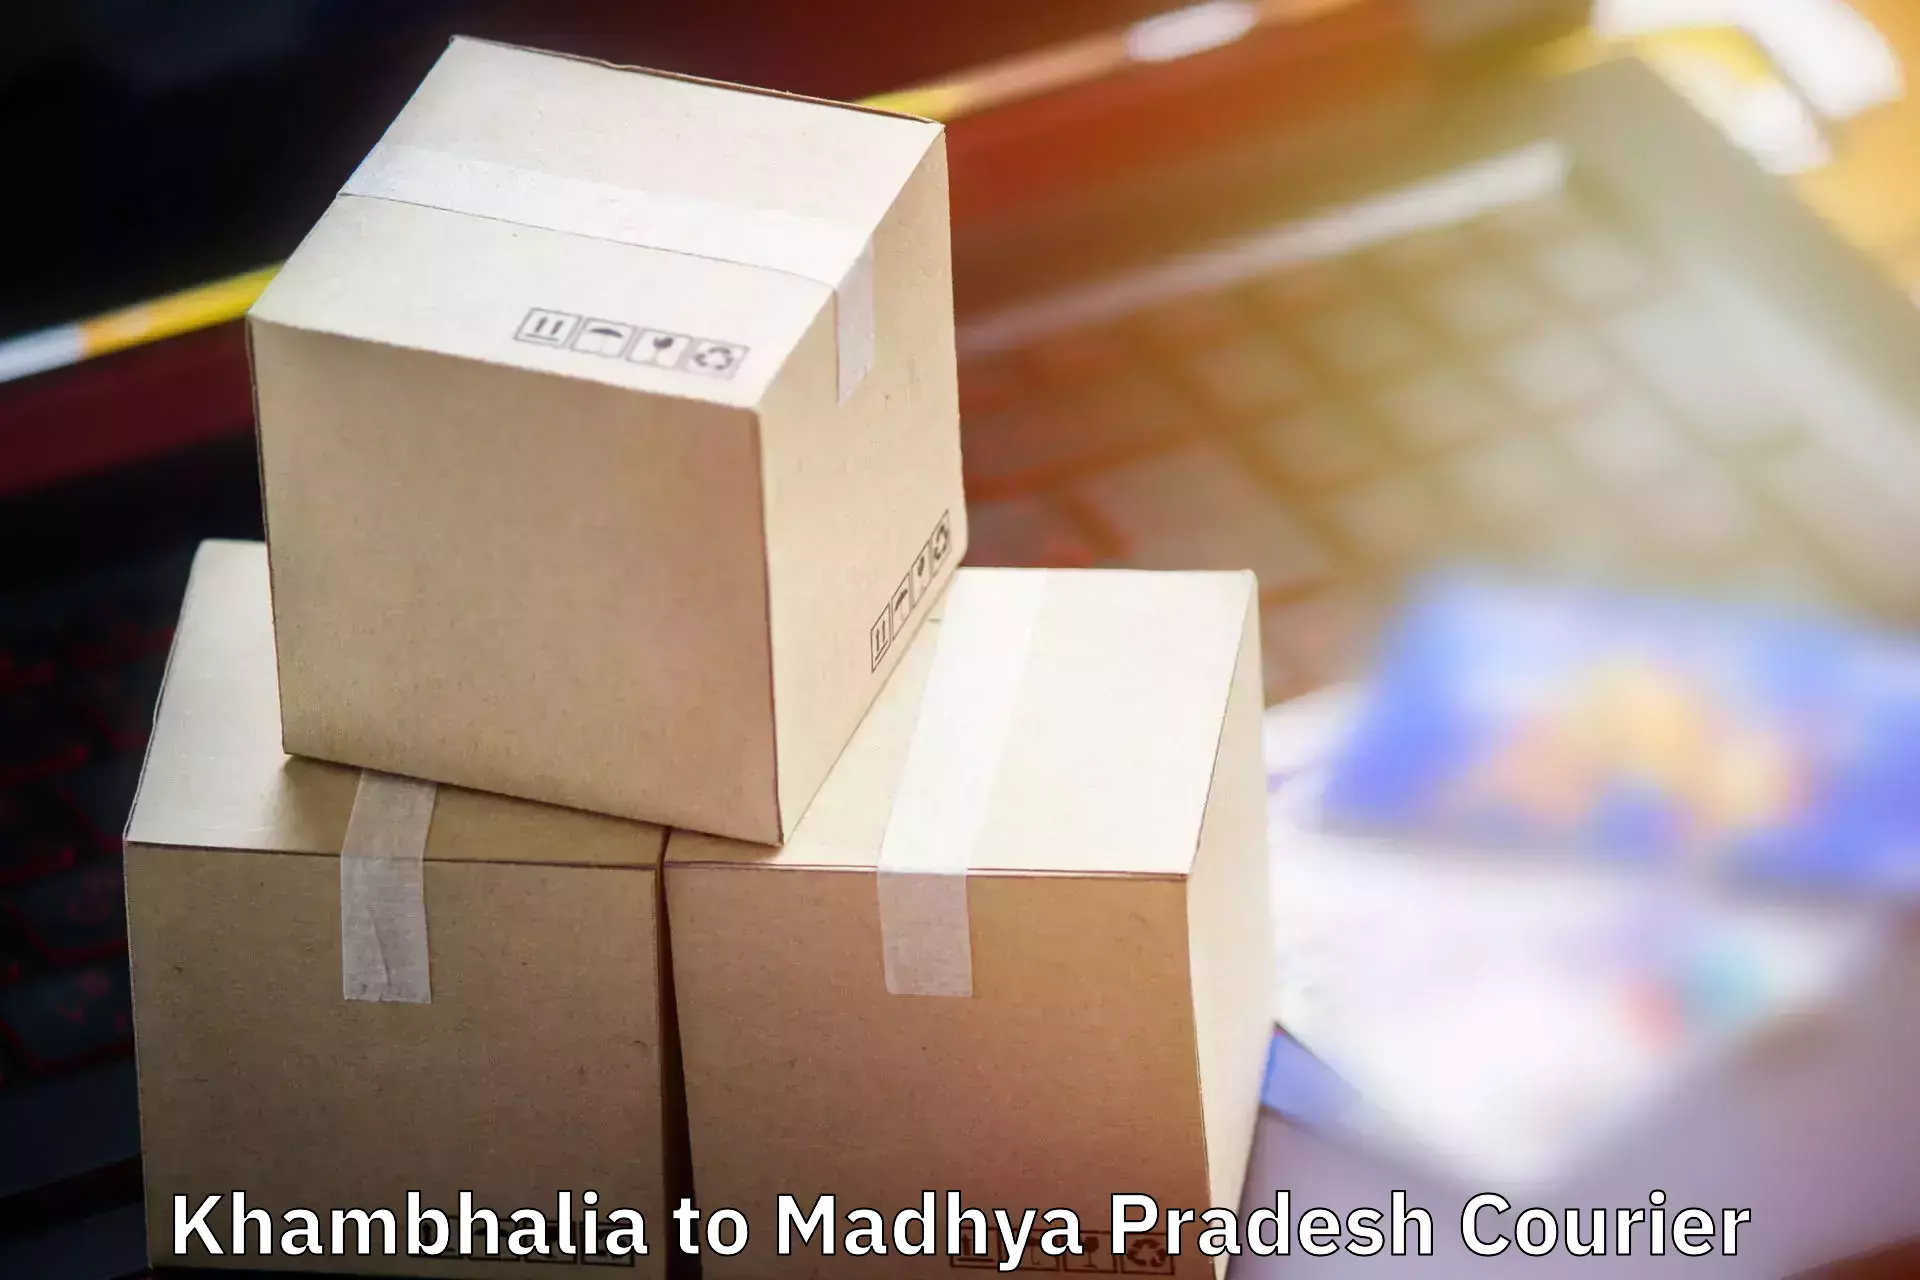 Baggage shipping quotes Khambhalia to Maheshwar